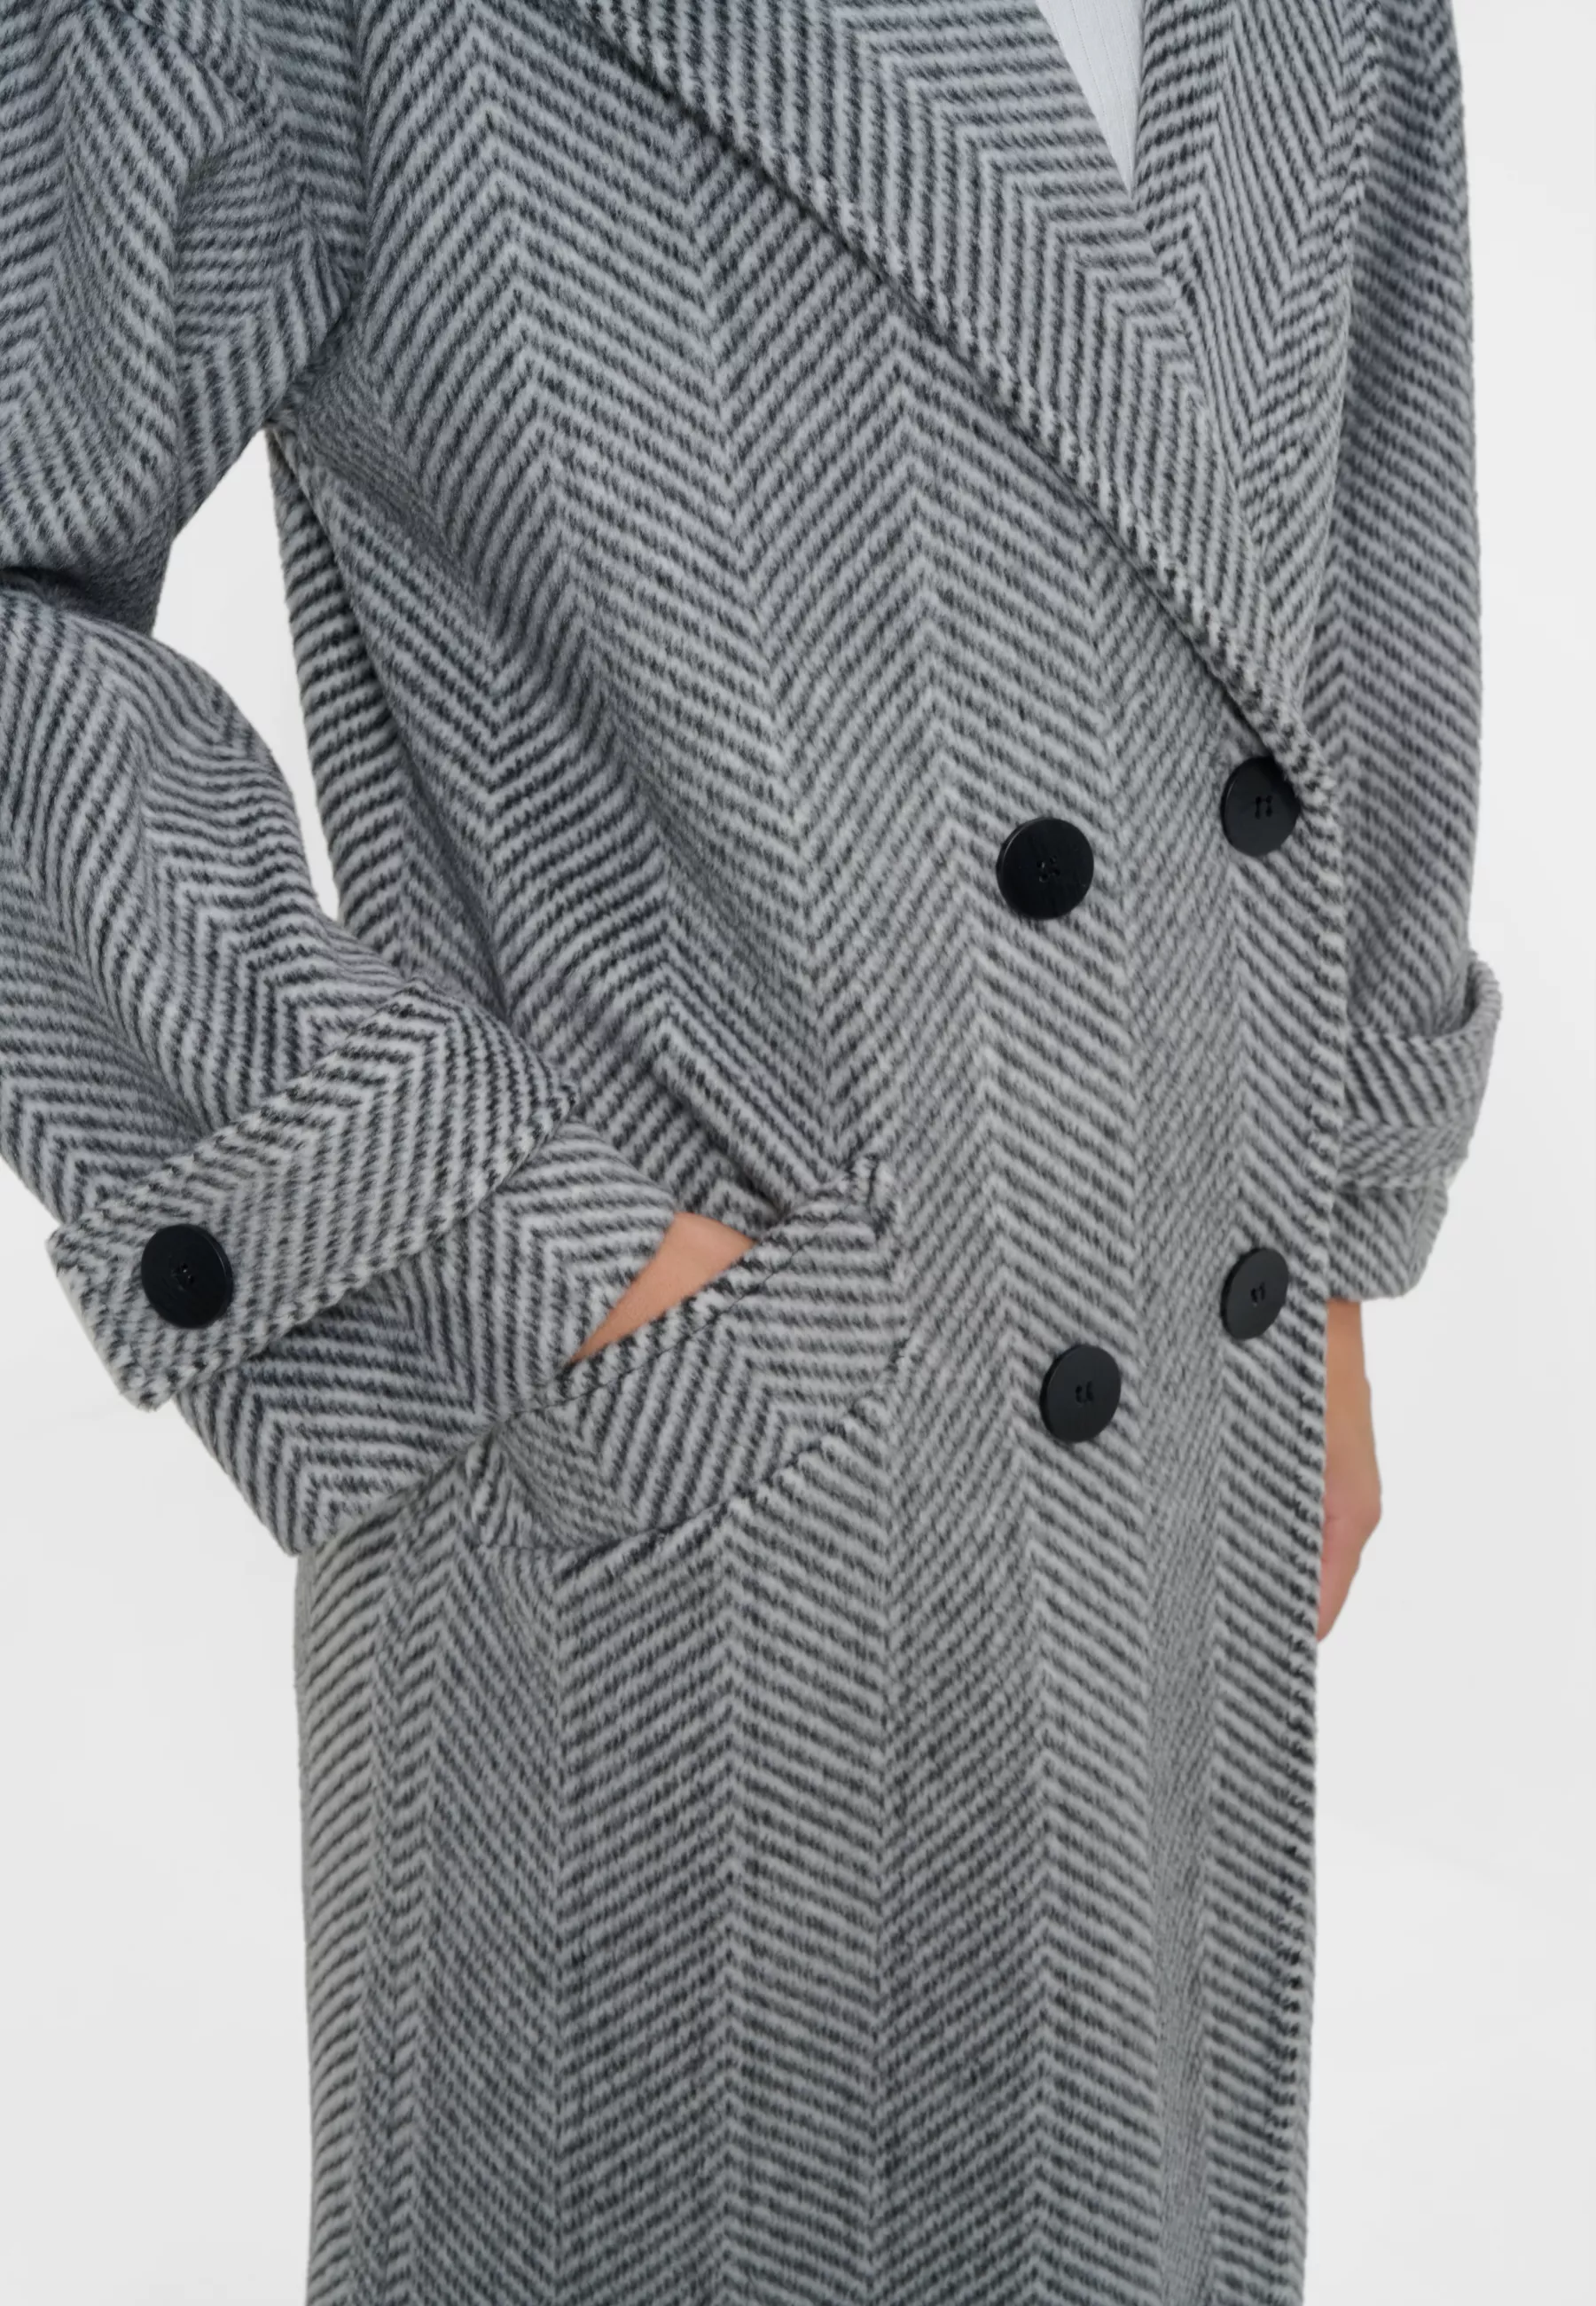 Damen Textil Mantel Franca in Grau gestreift von Ricano, Detailansicht am Model